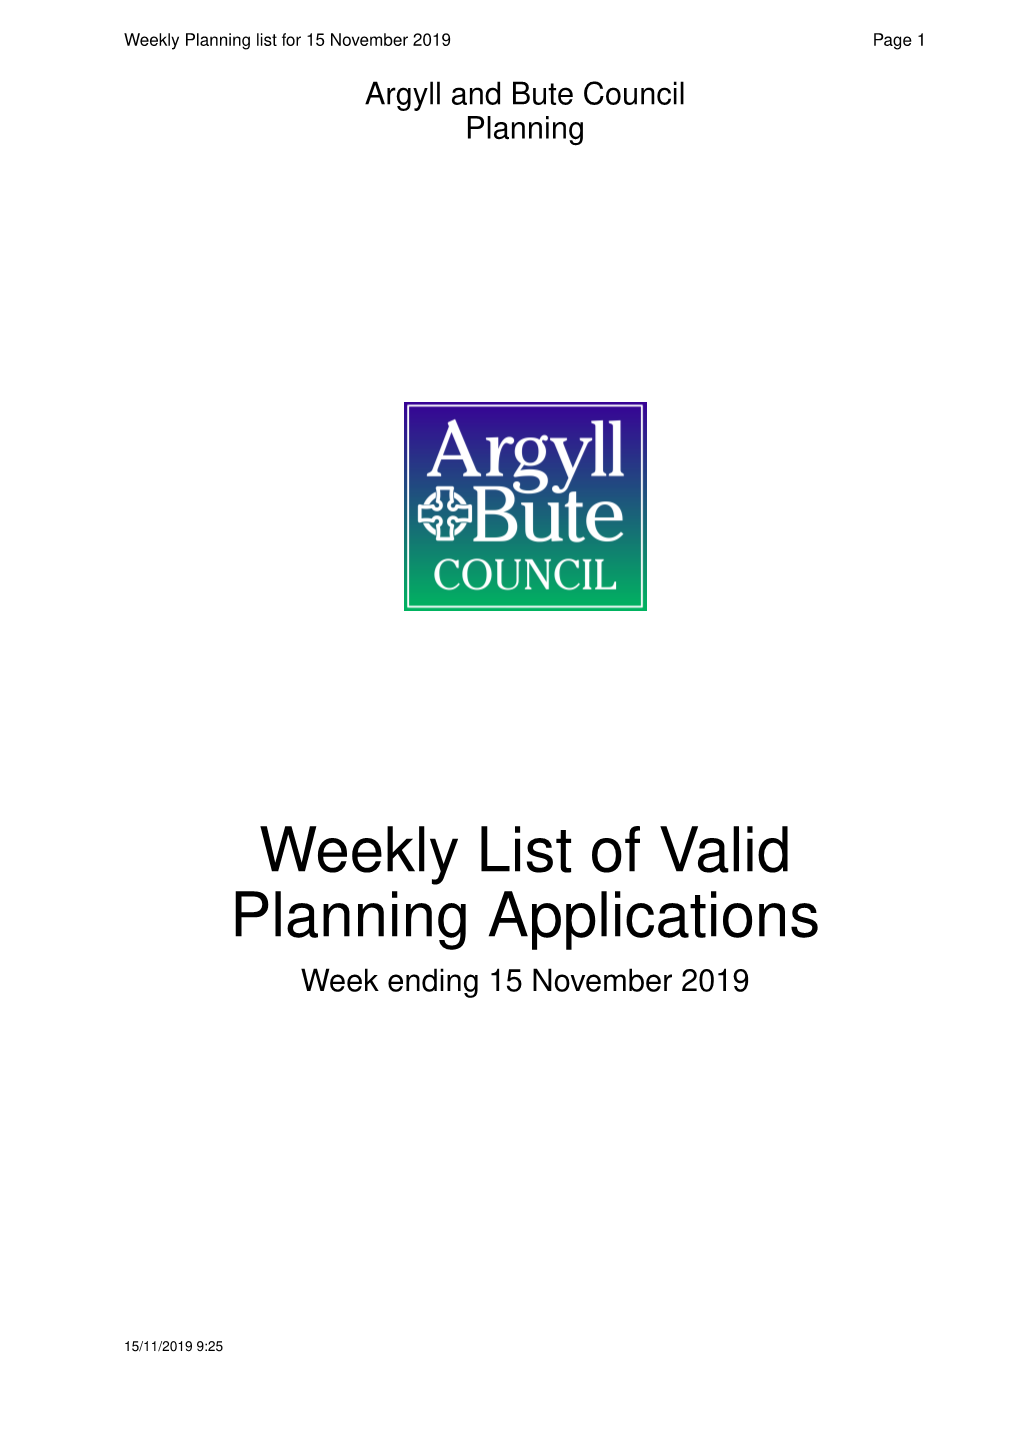 Weekly List of Valid Planning Applications Week Ending 15 November 2019